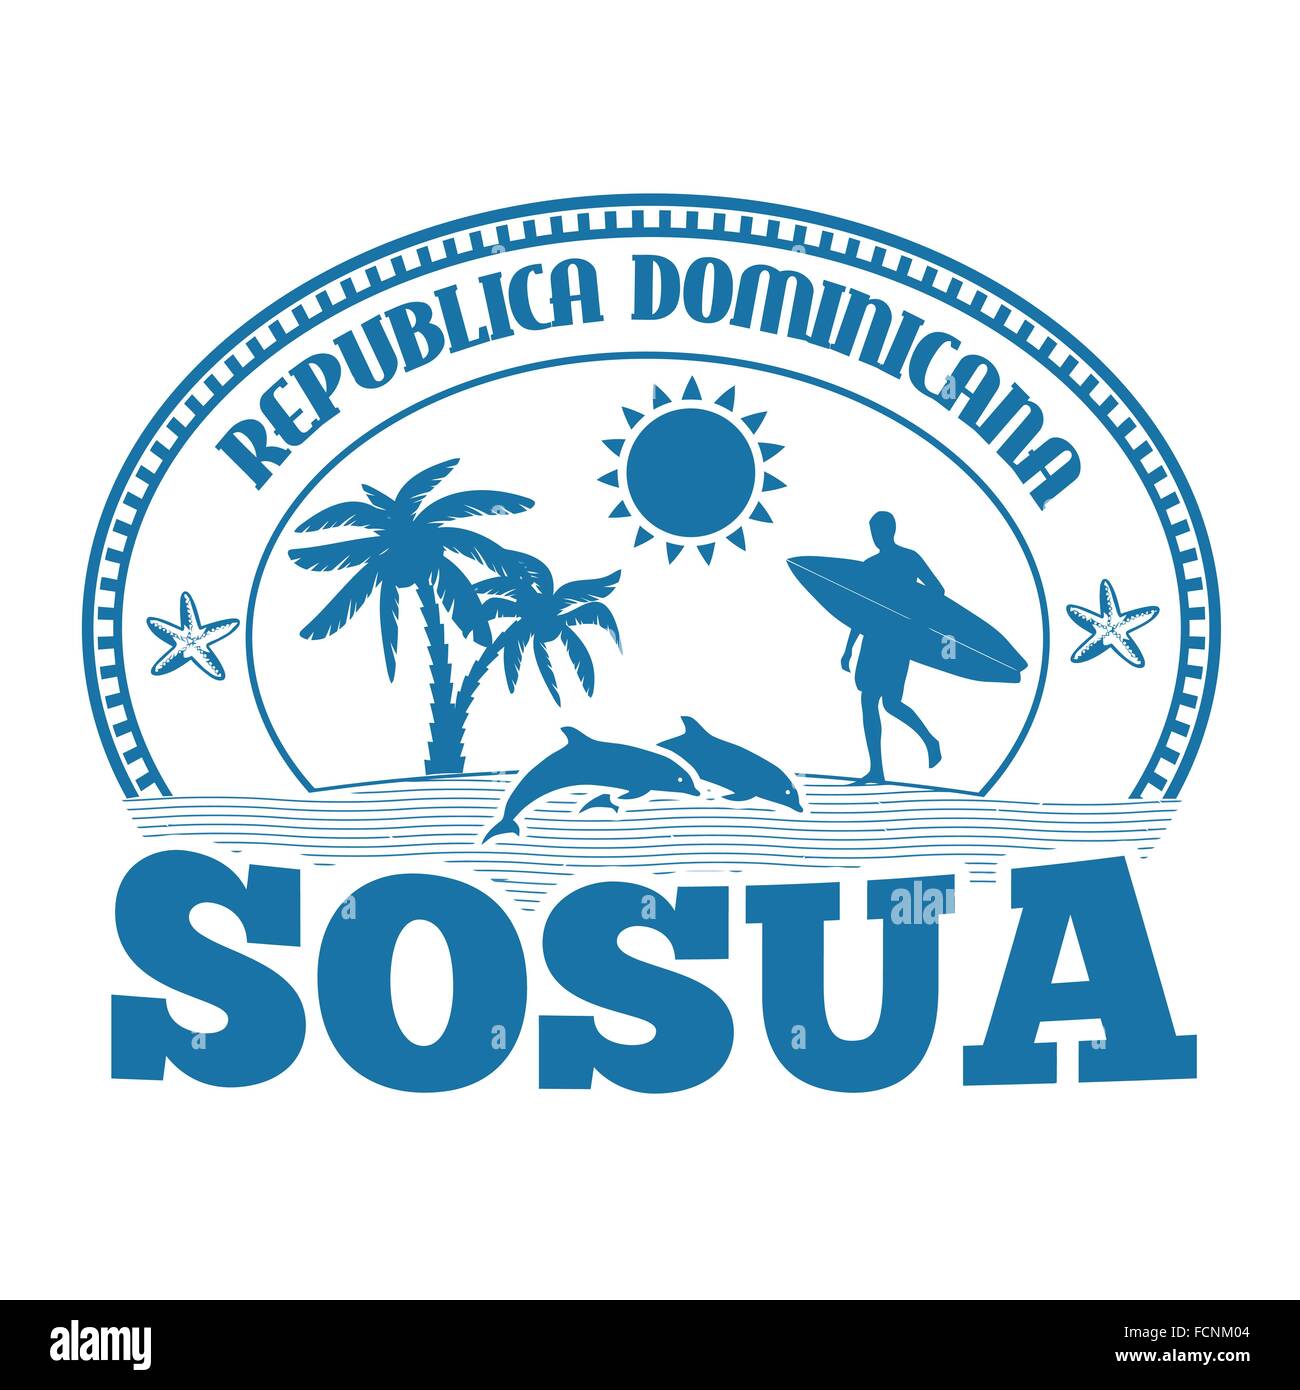 Sosua, Dominikanische Republik, Stempel oder Beschriftung auf weißem Hintergrund, Vektor-illustration Stock Vektor